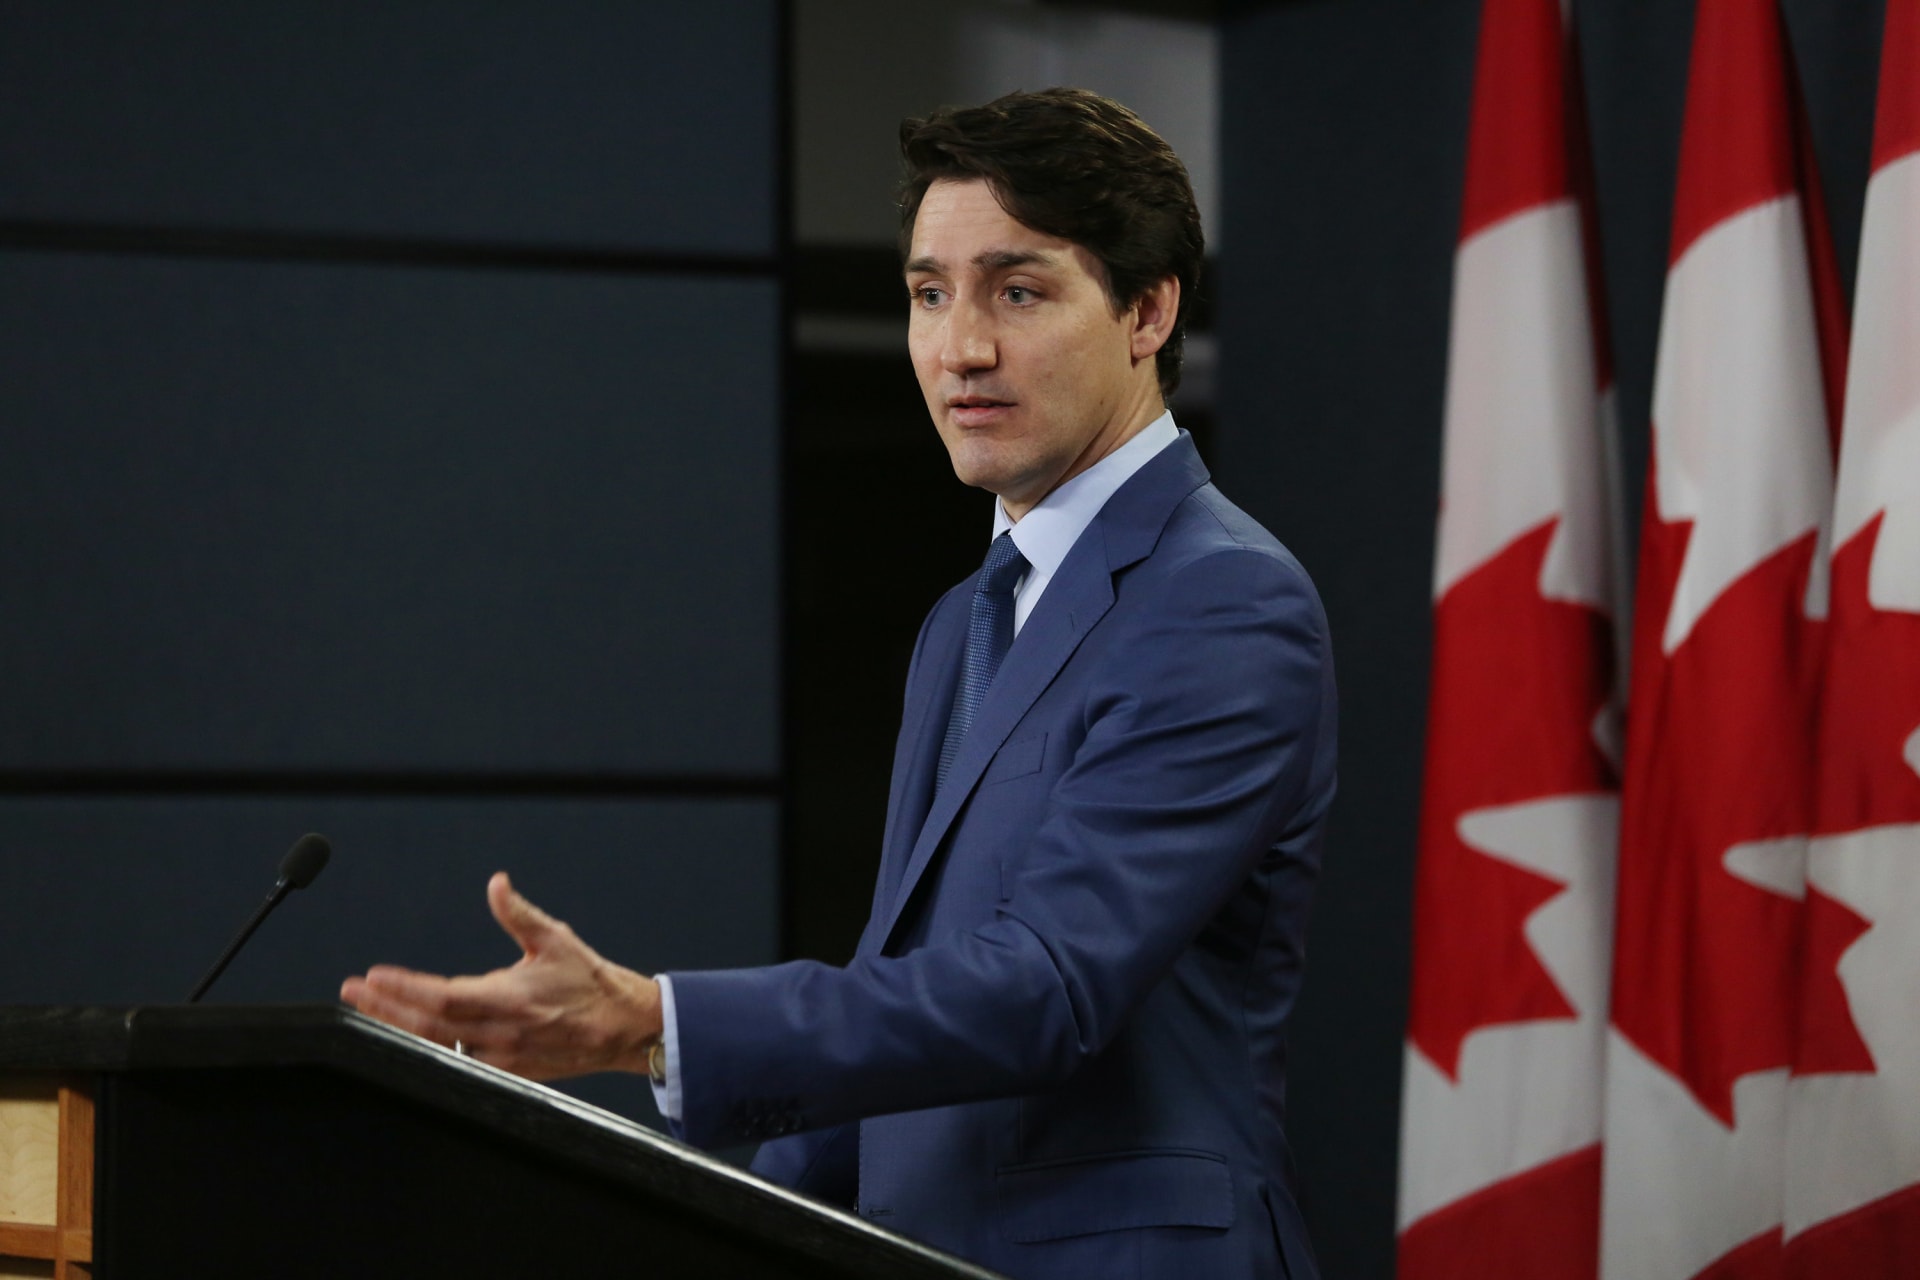 رئيس الوزراء الكندي جاستن ترودو يعتذر عن صورة ألف ليلة وليلة بعد جدل واسع كان عنصريًا ، سي إن إن العربية